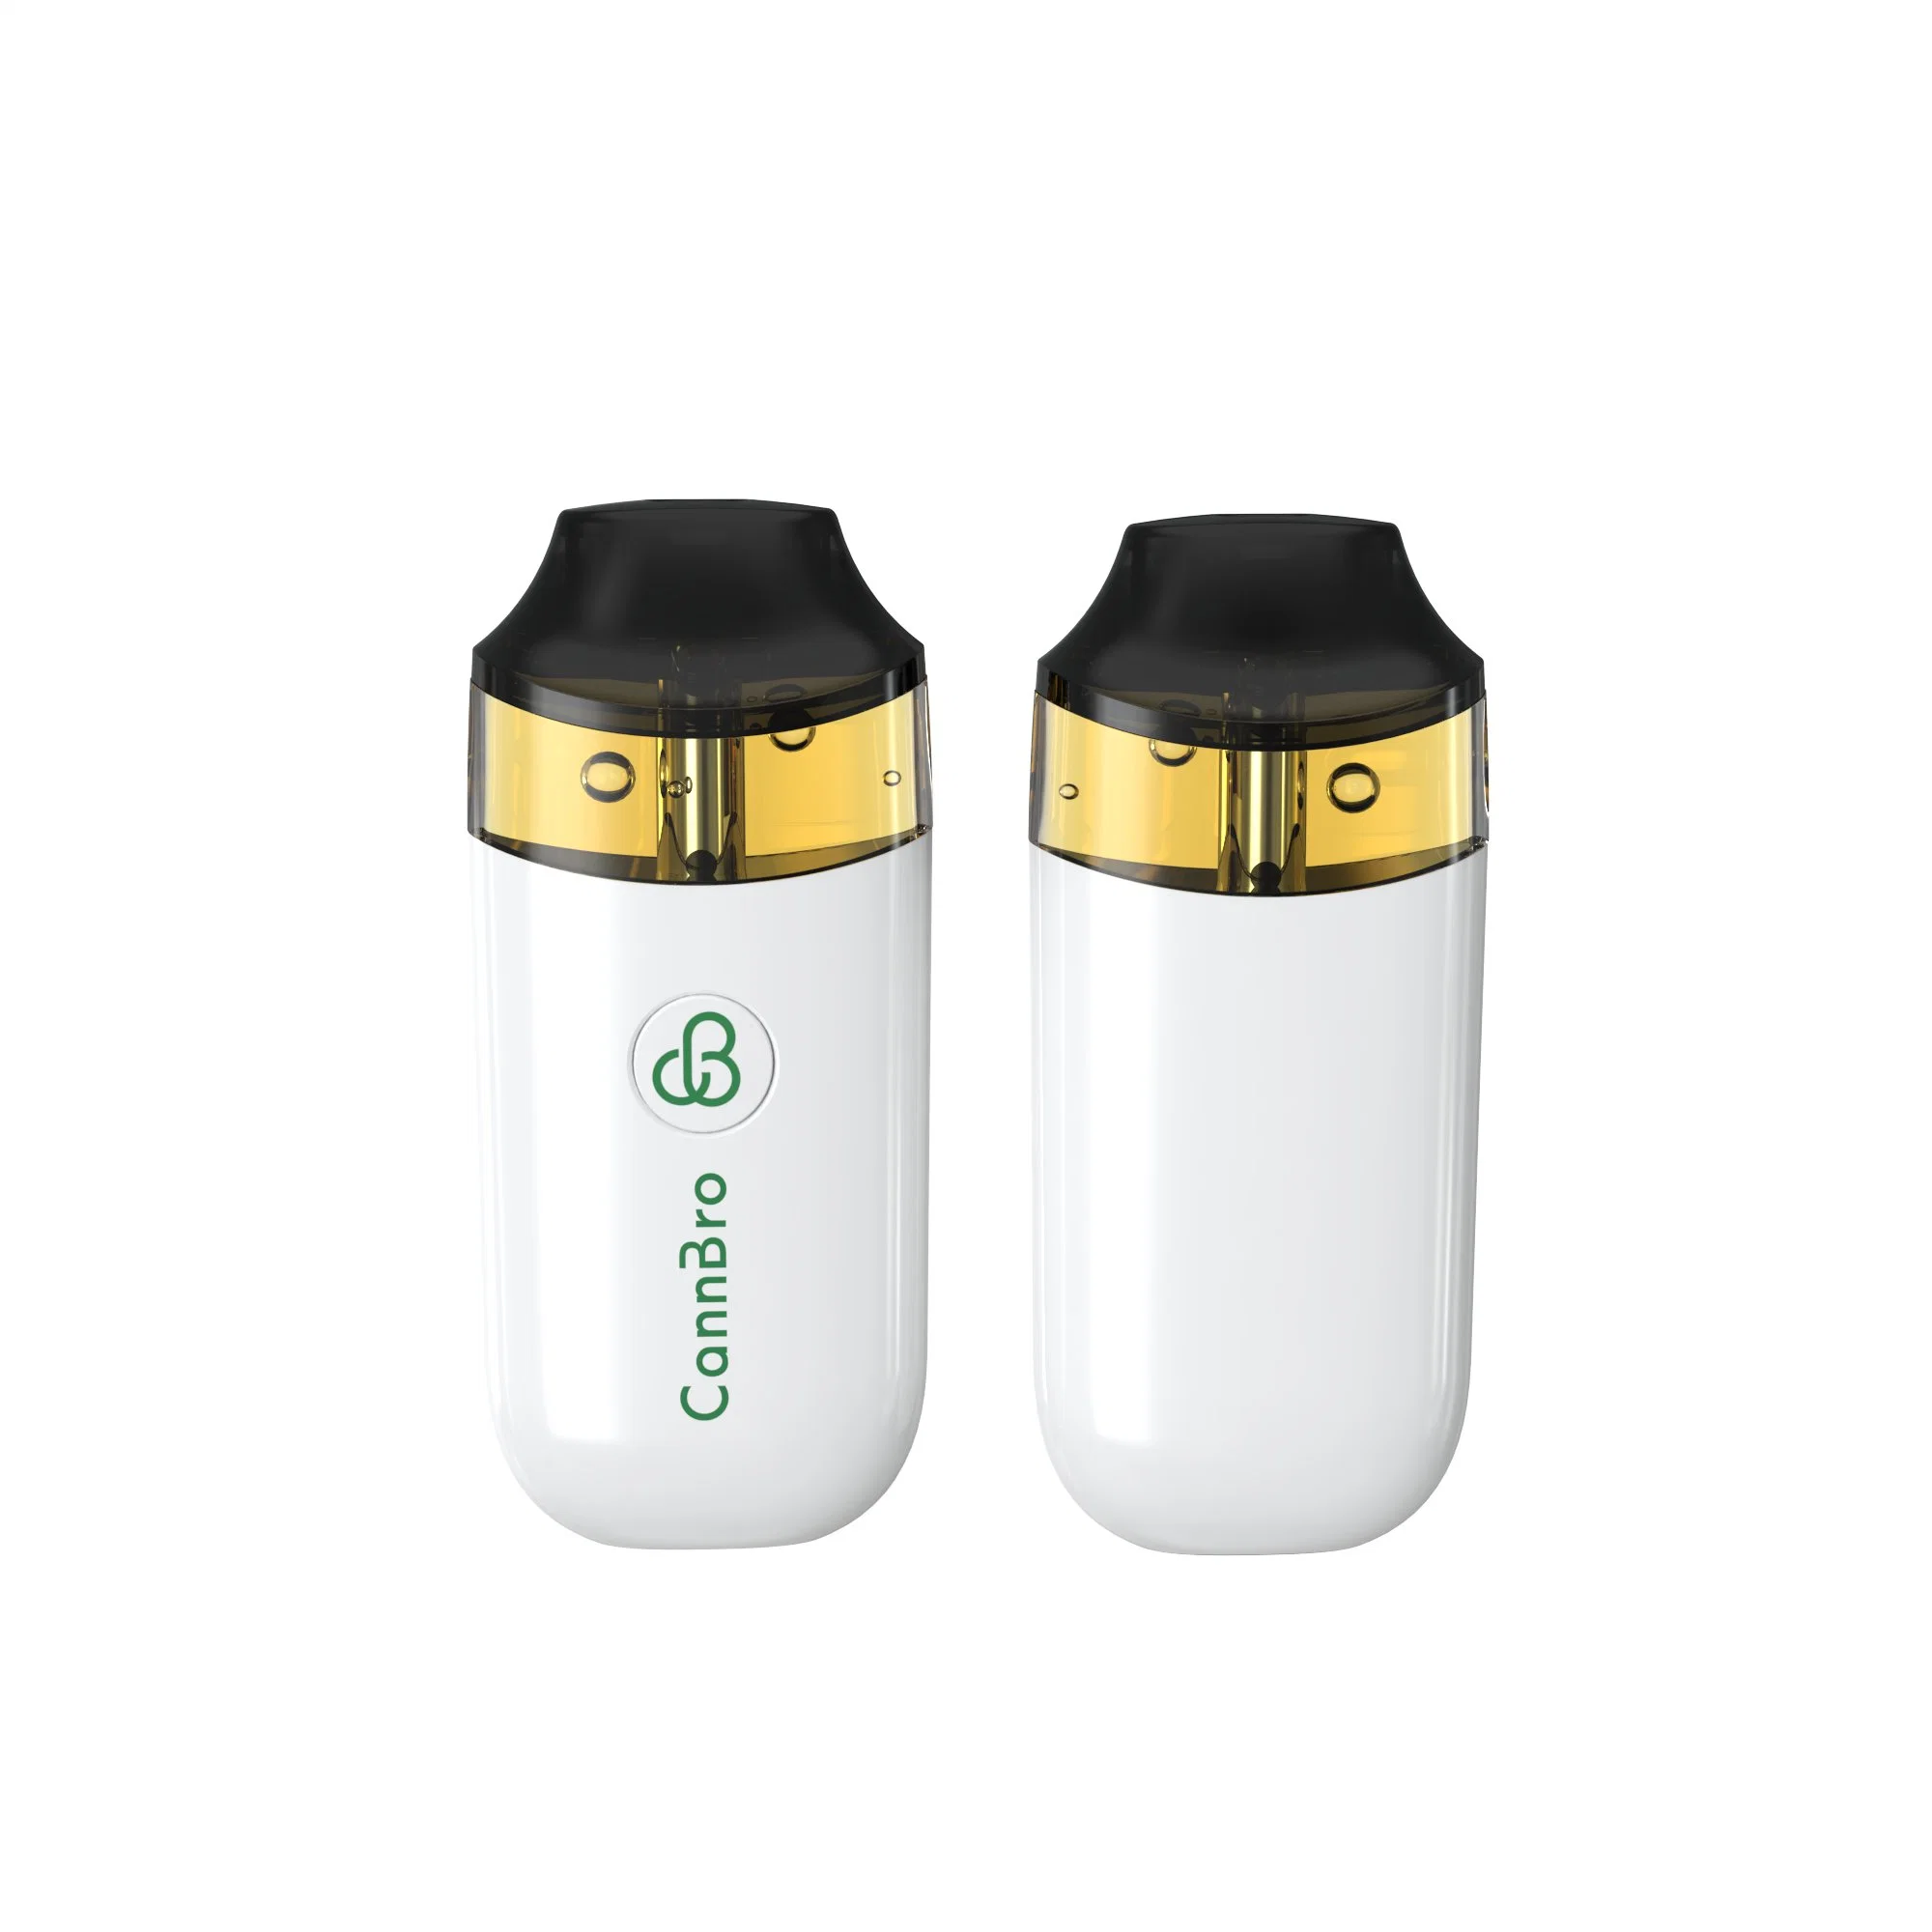 Cannbro Vente en gros de vaporisateur électrique rechargeable personnalisé, jetable, pour huile épaisse, vide, 1 ml, 3 ml, 4 ml, stylo vape gratuit.